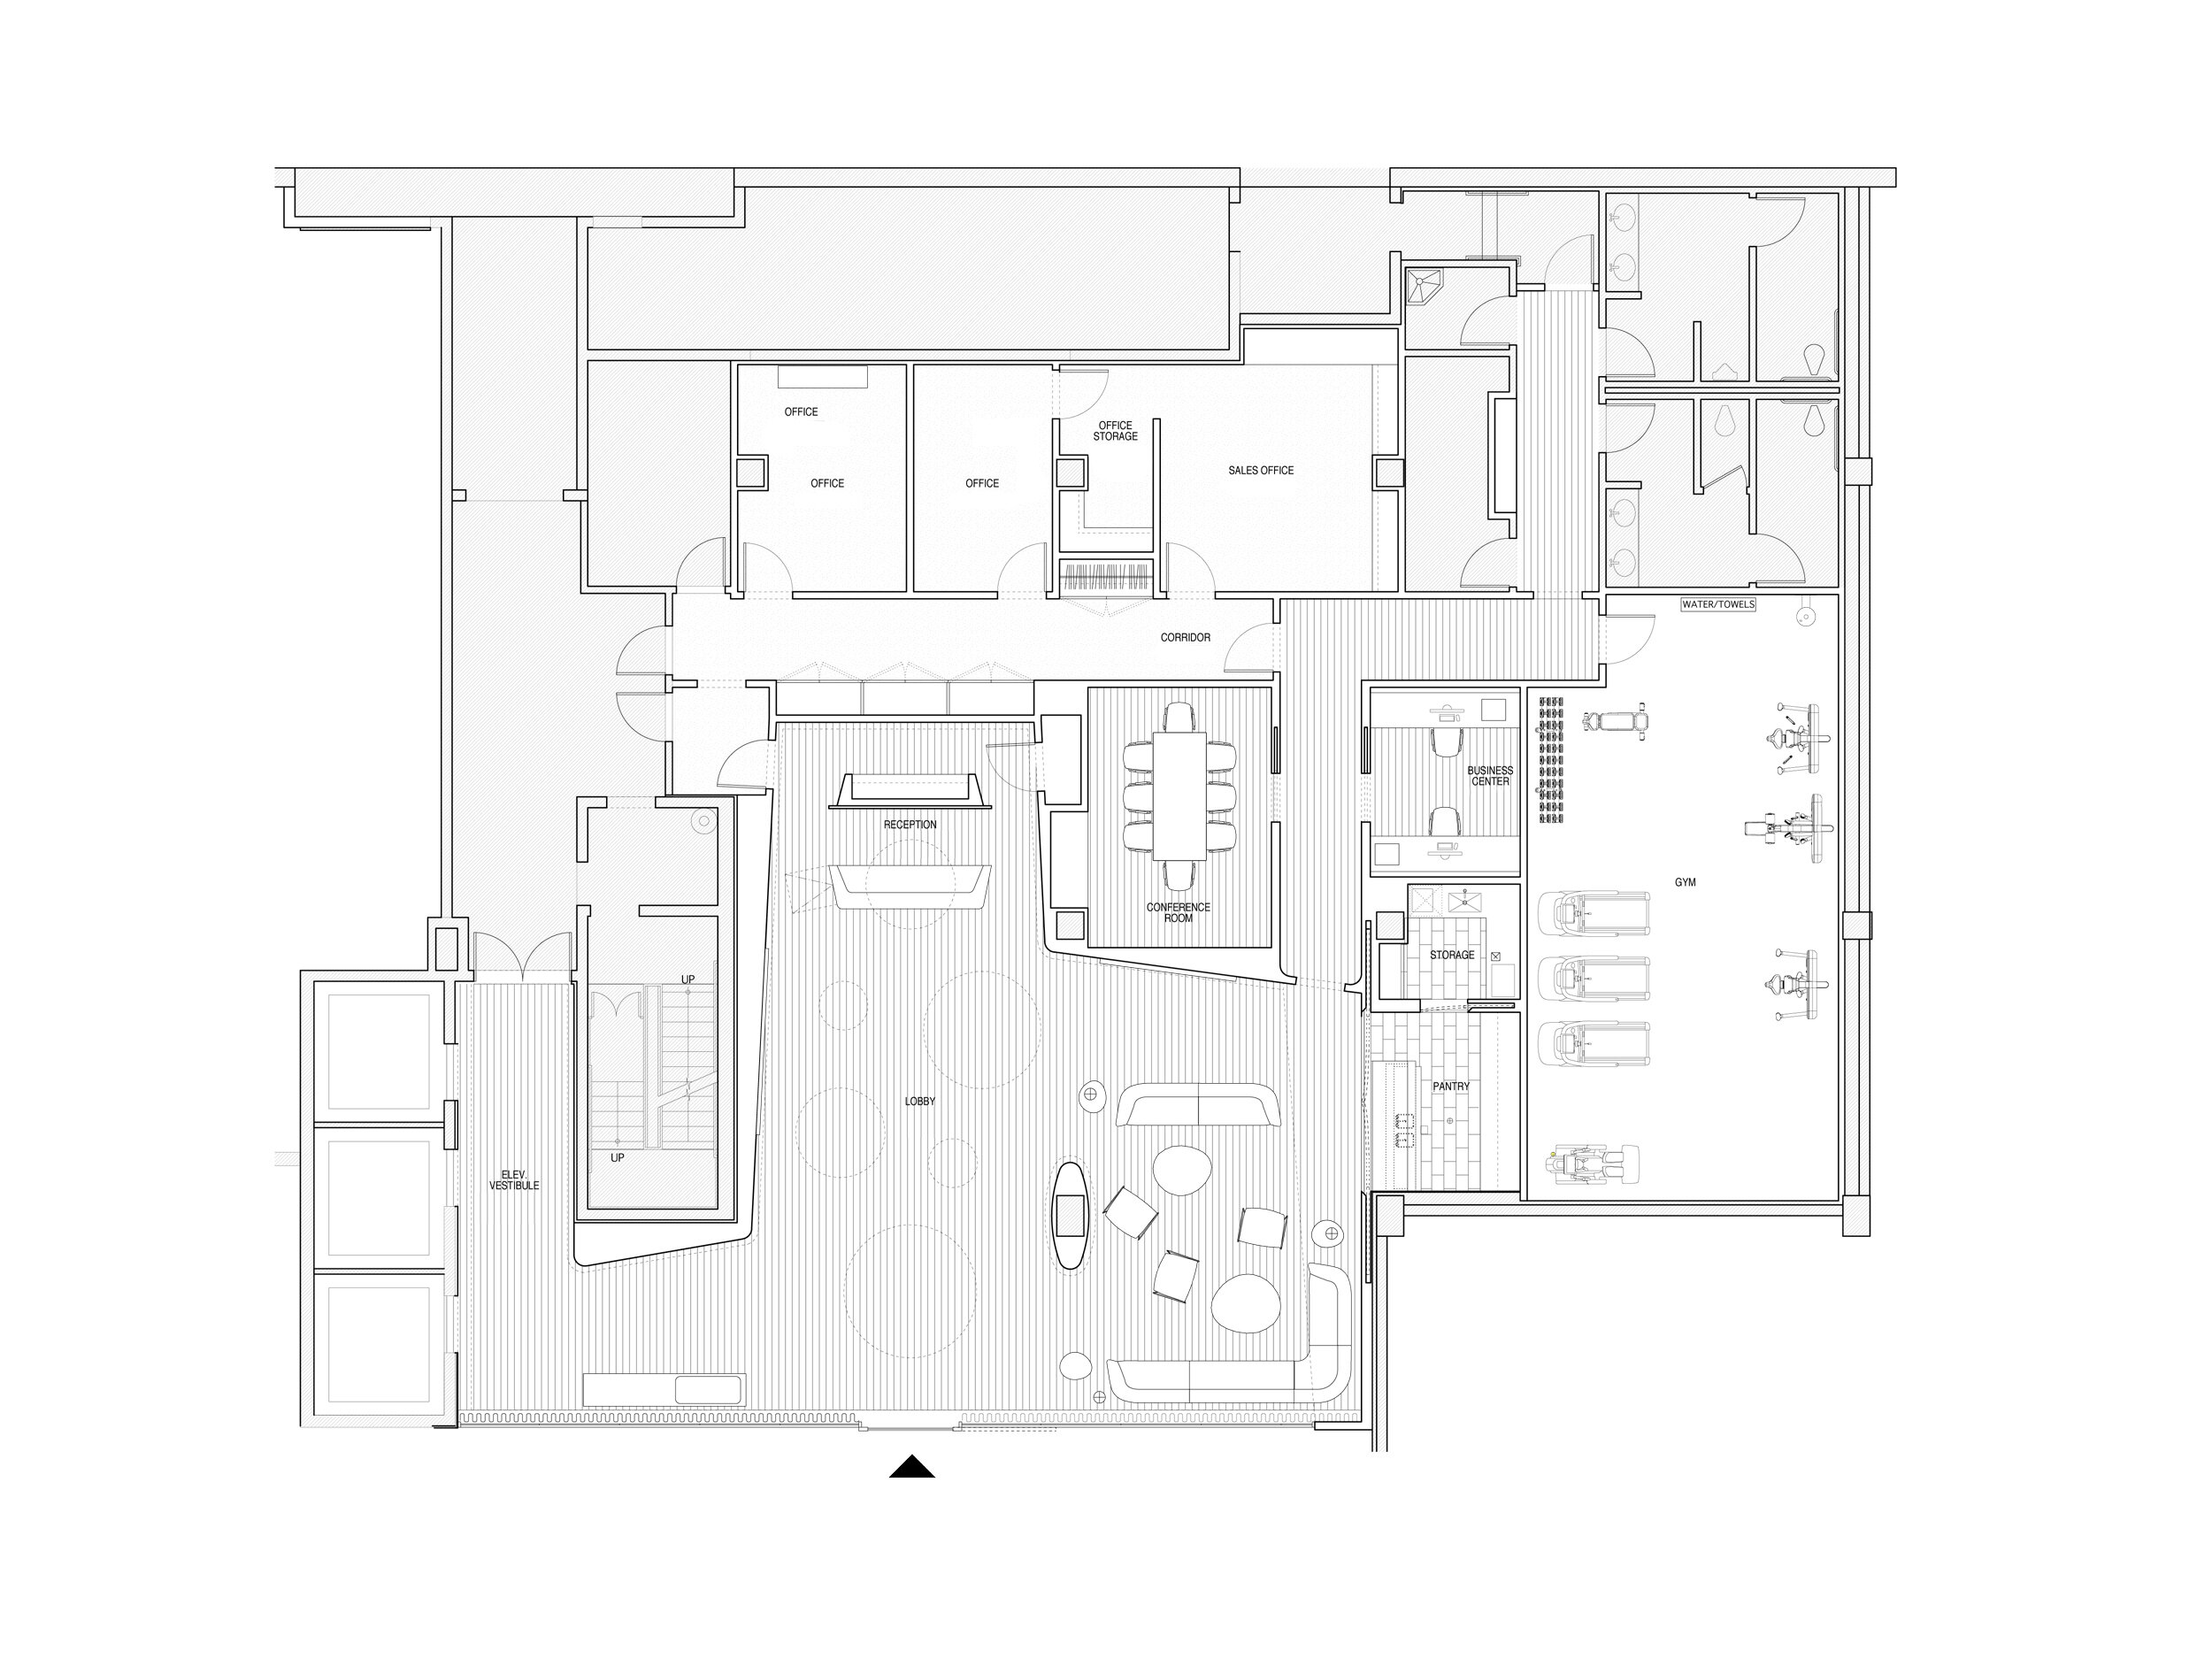 Partial ground floor plan.